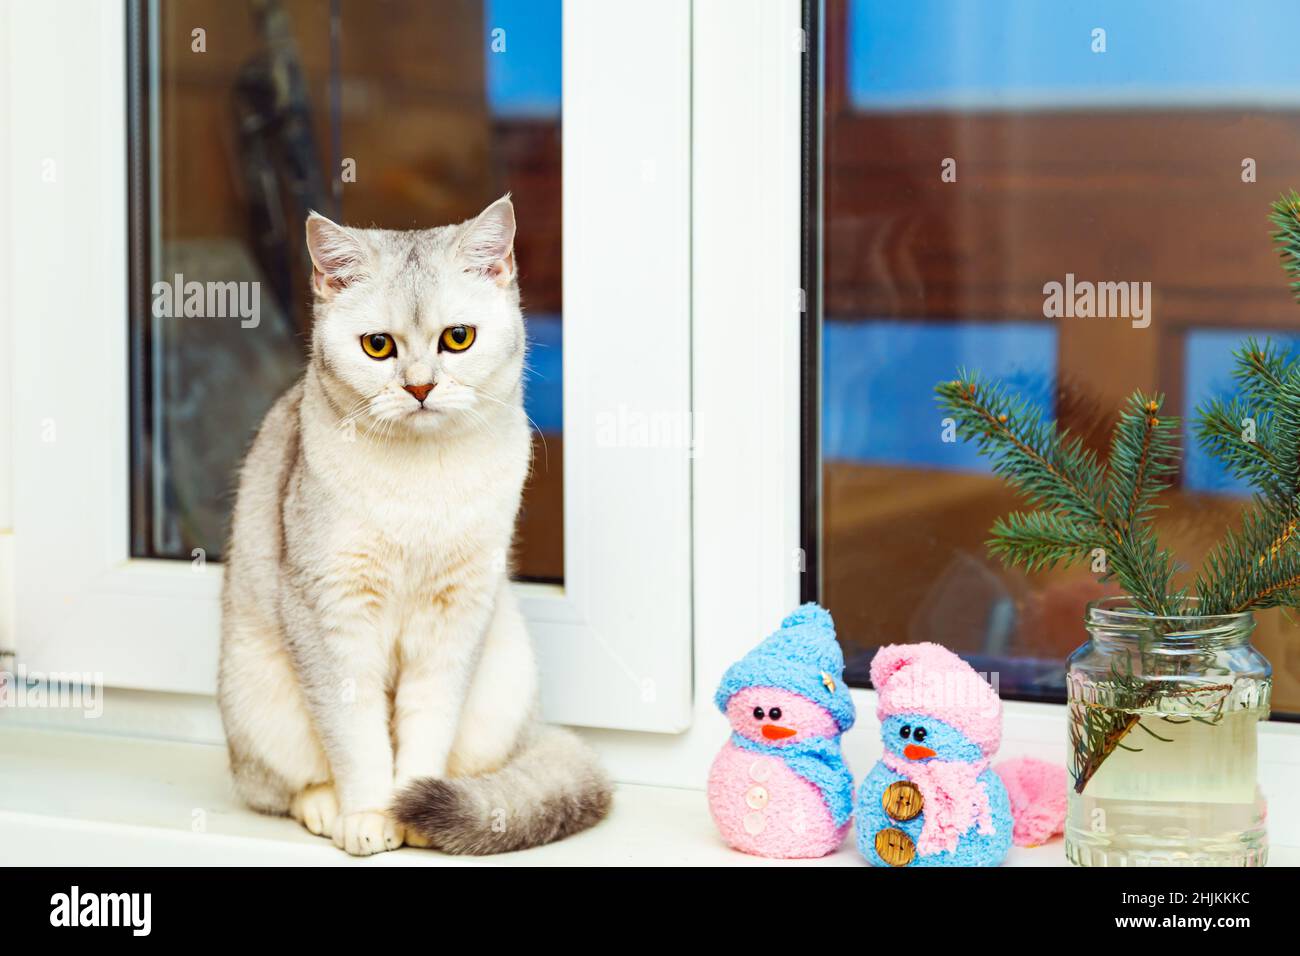 Le chat d'argent de shorthair britannique se trouve sur le rebord de la fenêtre.Décor de Noël et crépuscule. Banque D'Images